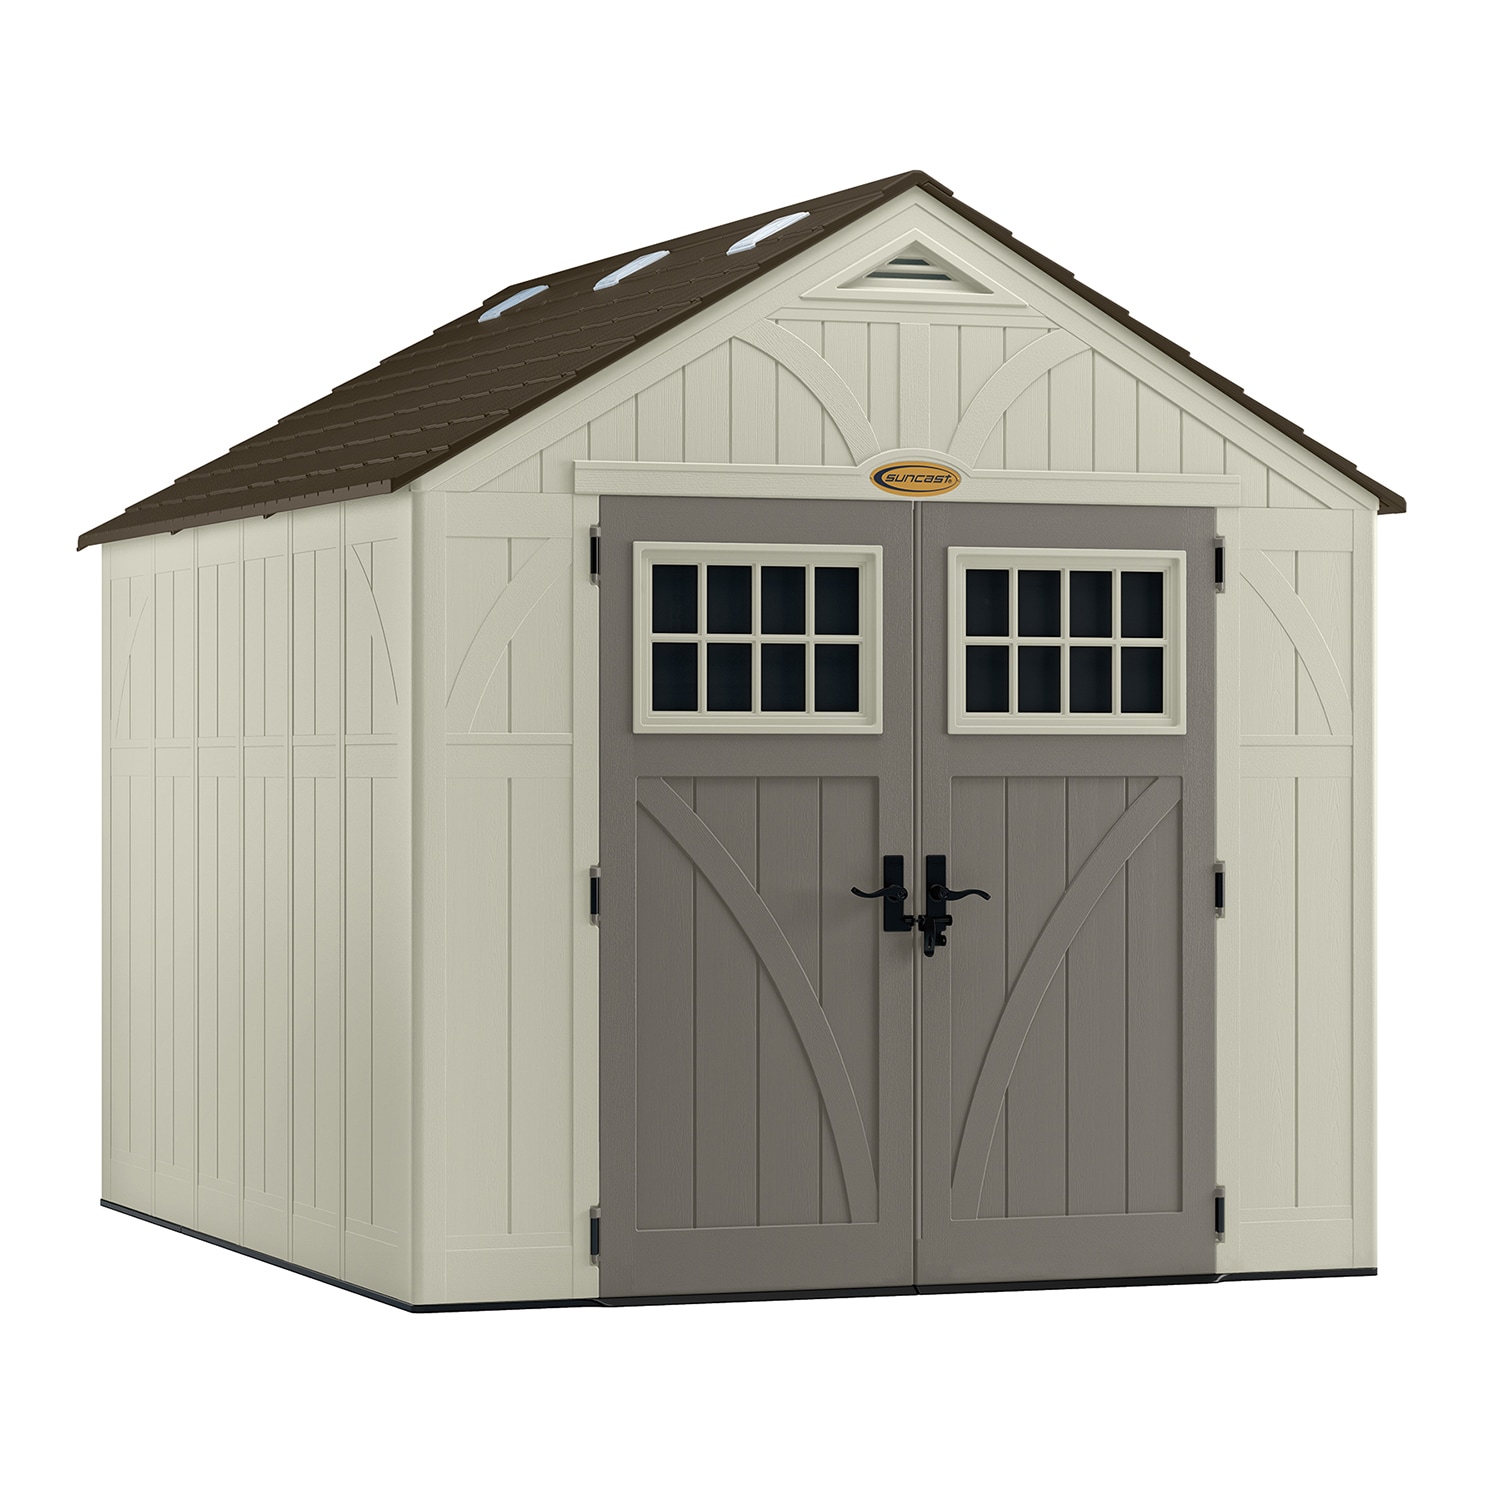 Suncast 8x10 storage shed